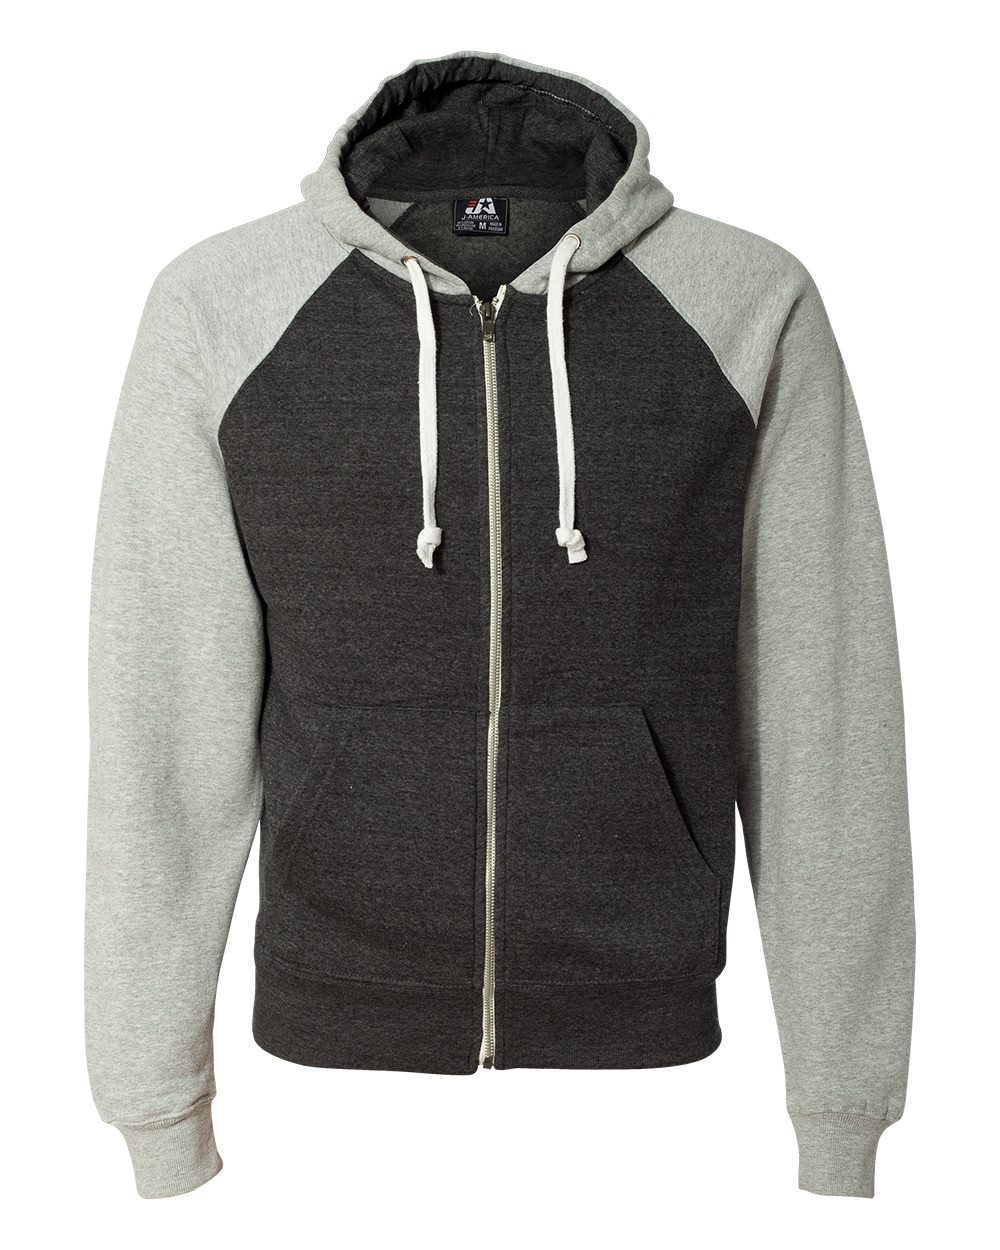 J. America 8874 - Triblend Raglan Full-Zip Hooded Sweatshirt